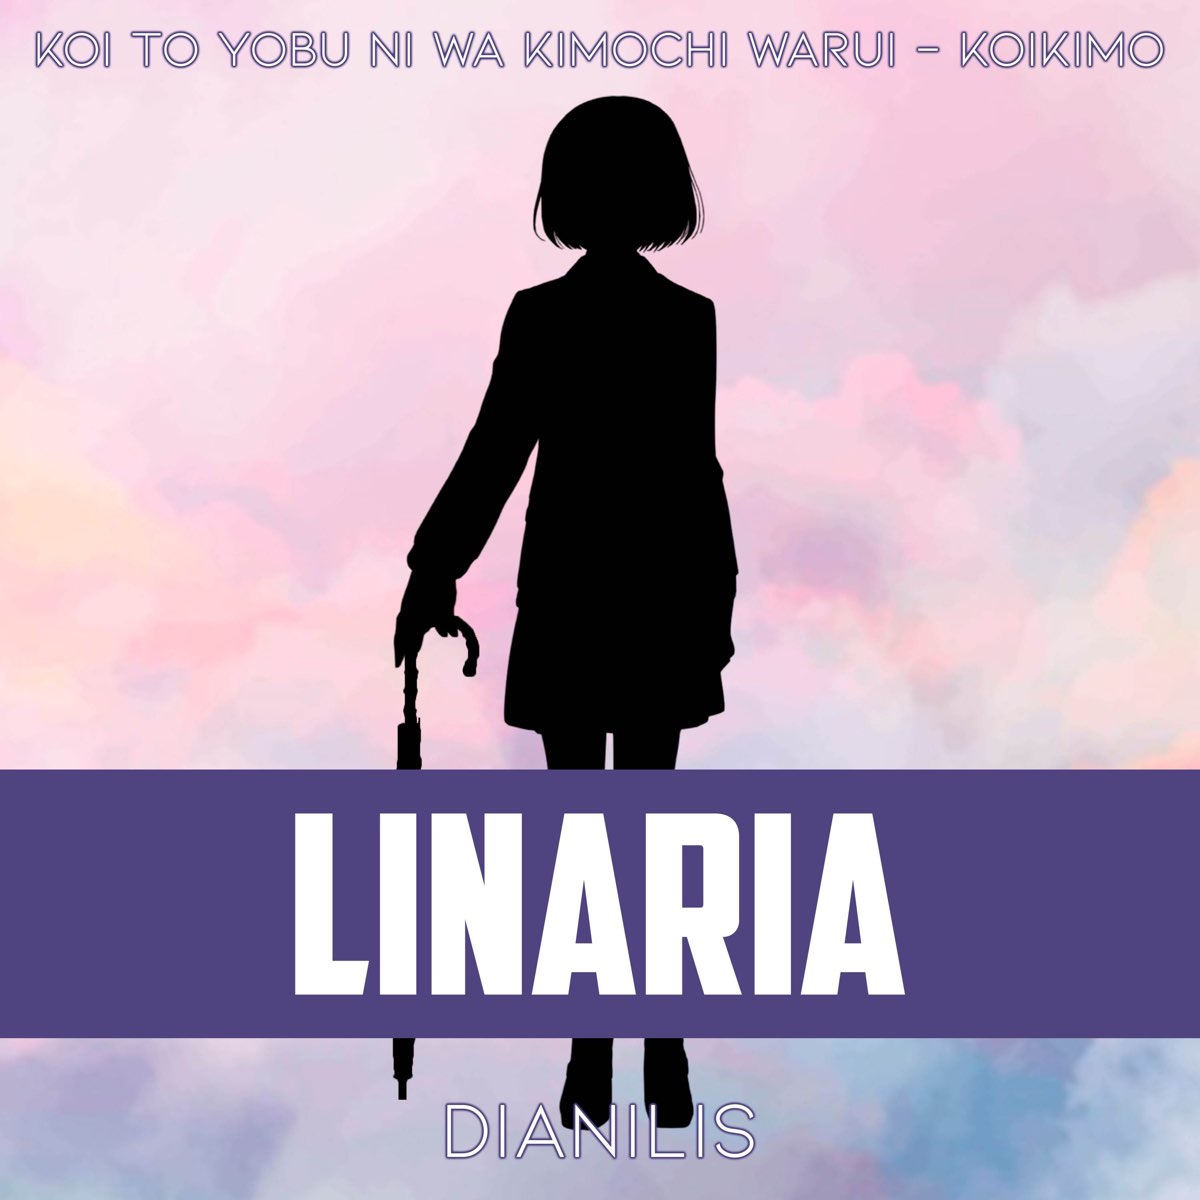 Koi to Yobu ni wa Kimochi Warui (2021) movie cover